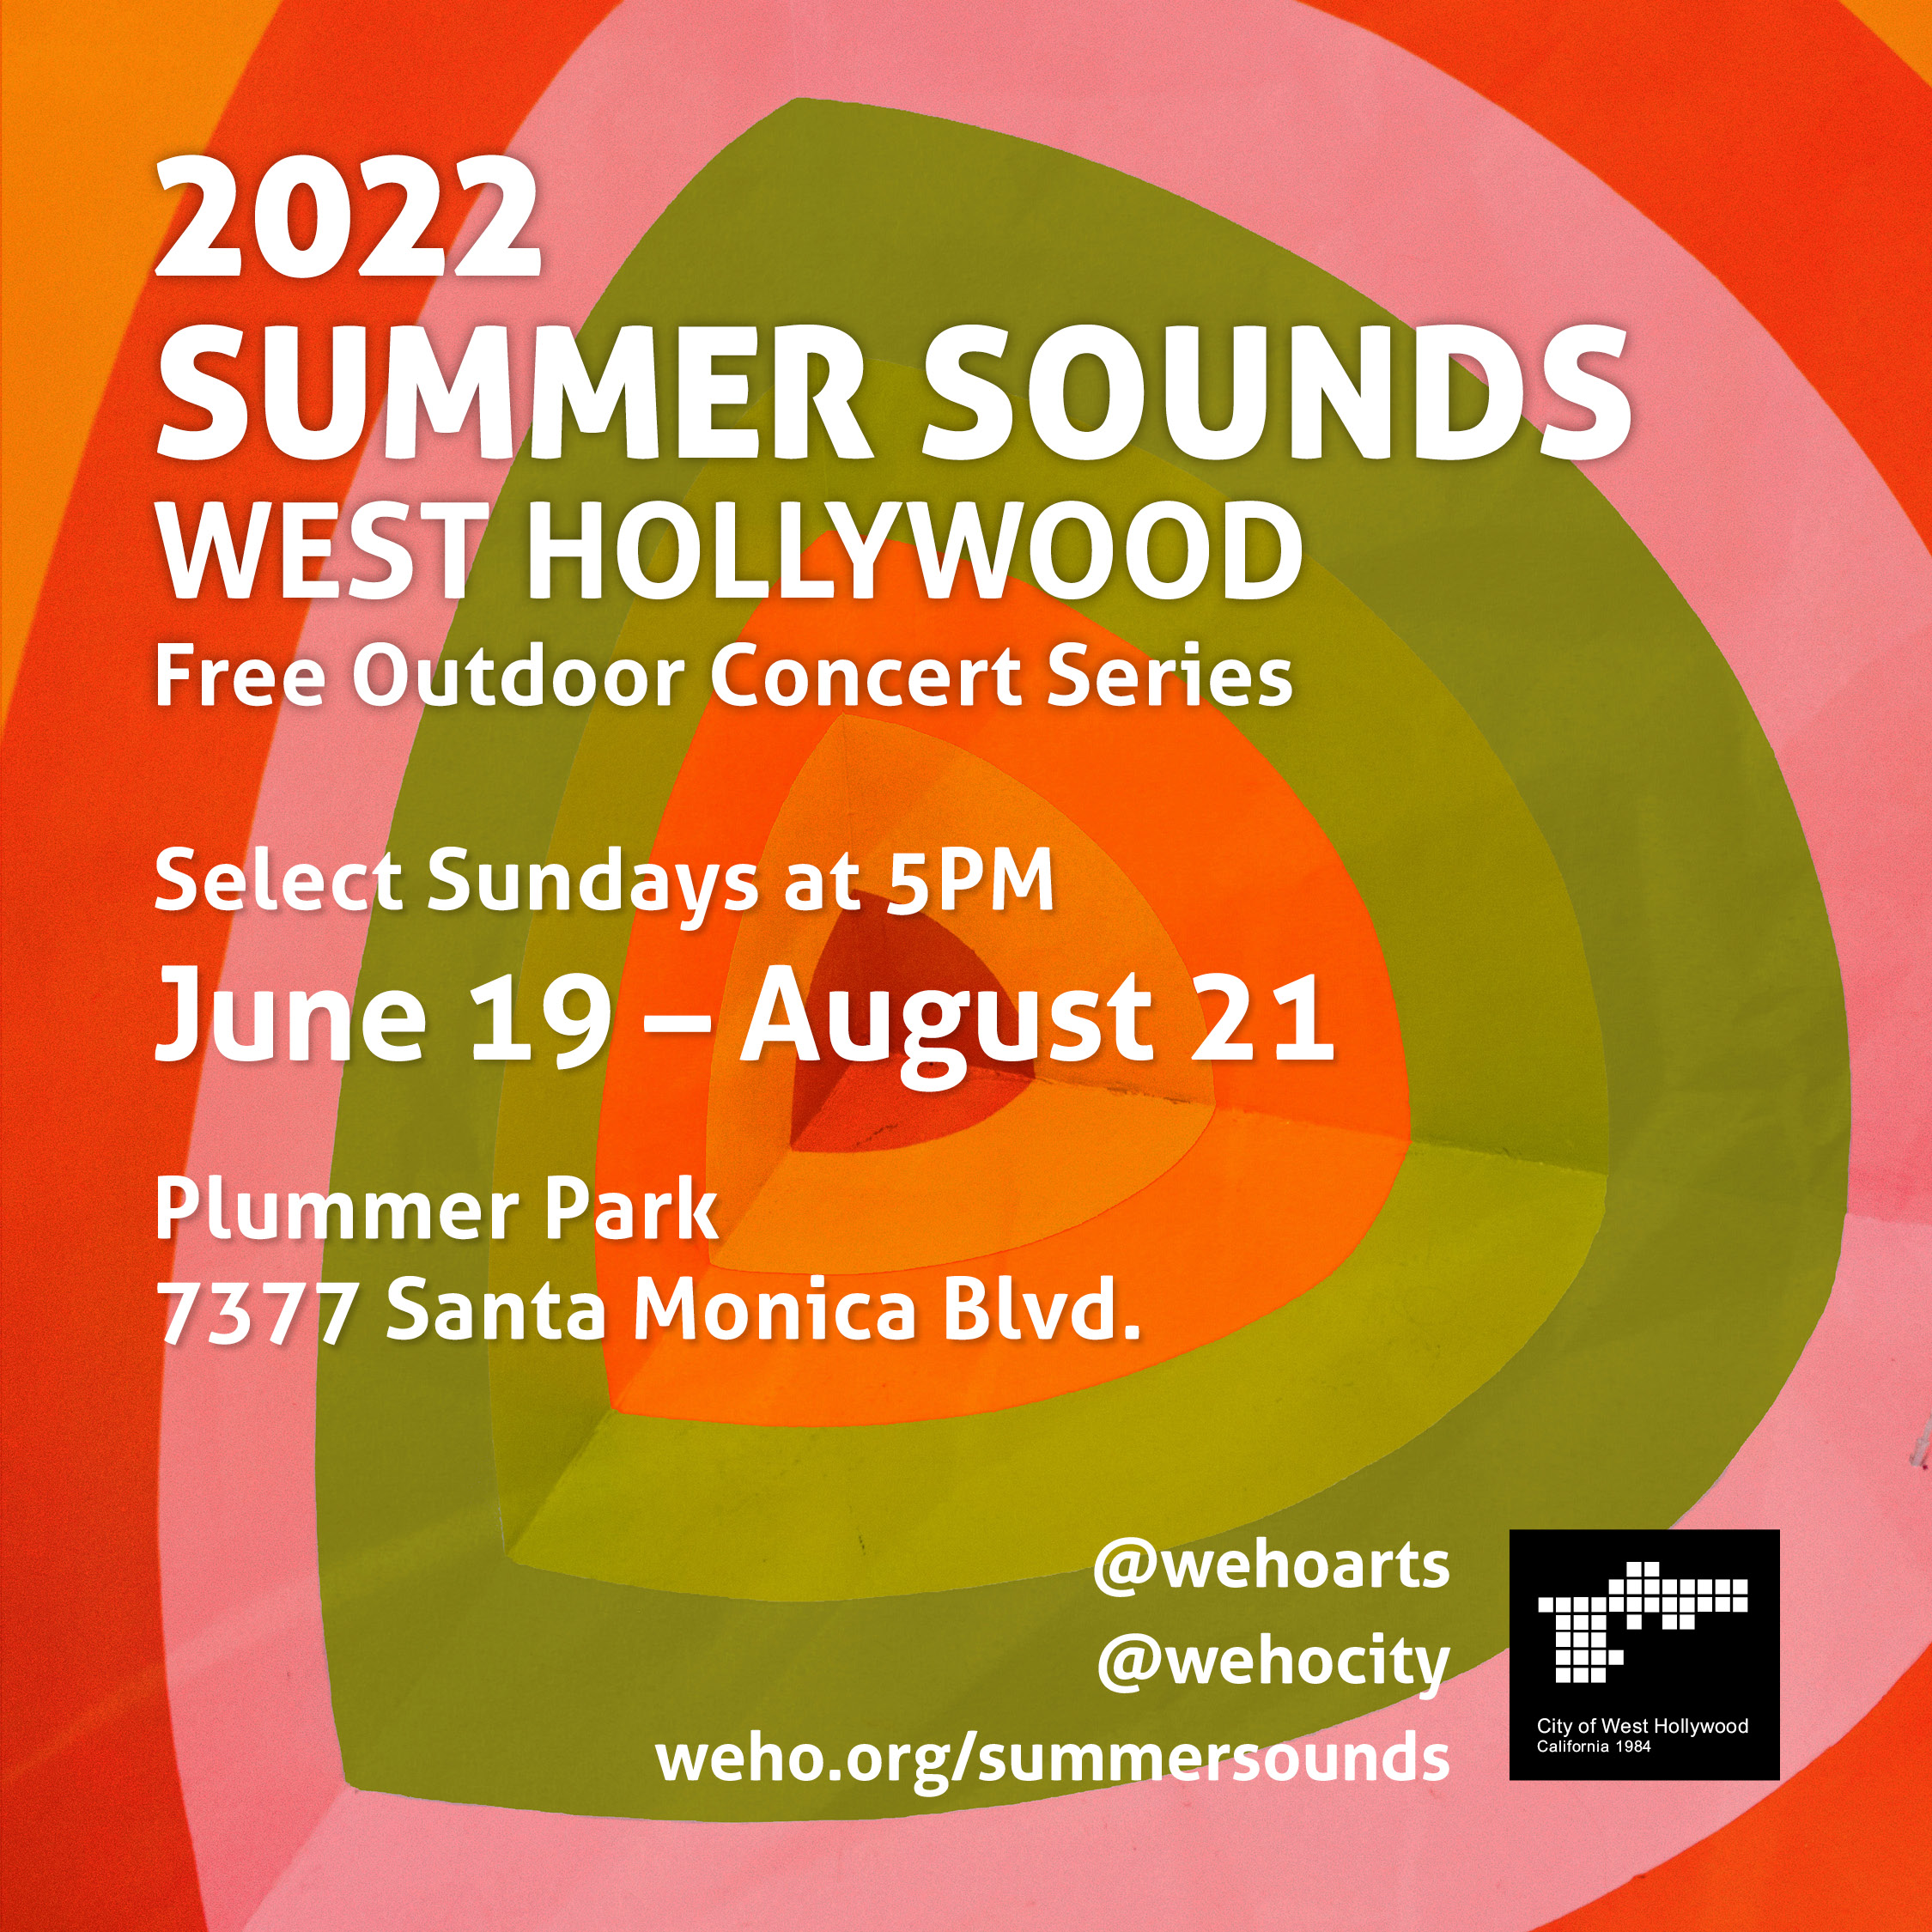 Summer Sounds 2022 at Plummer Park on Sun, Jun 19th, 2022 500 pm